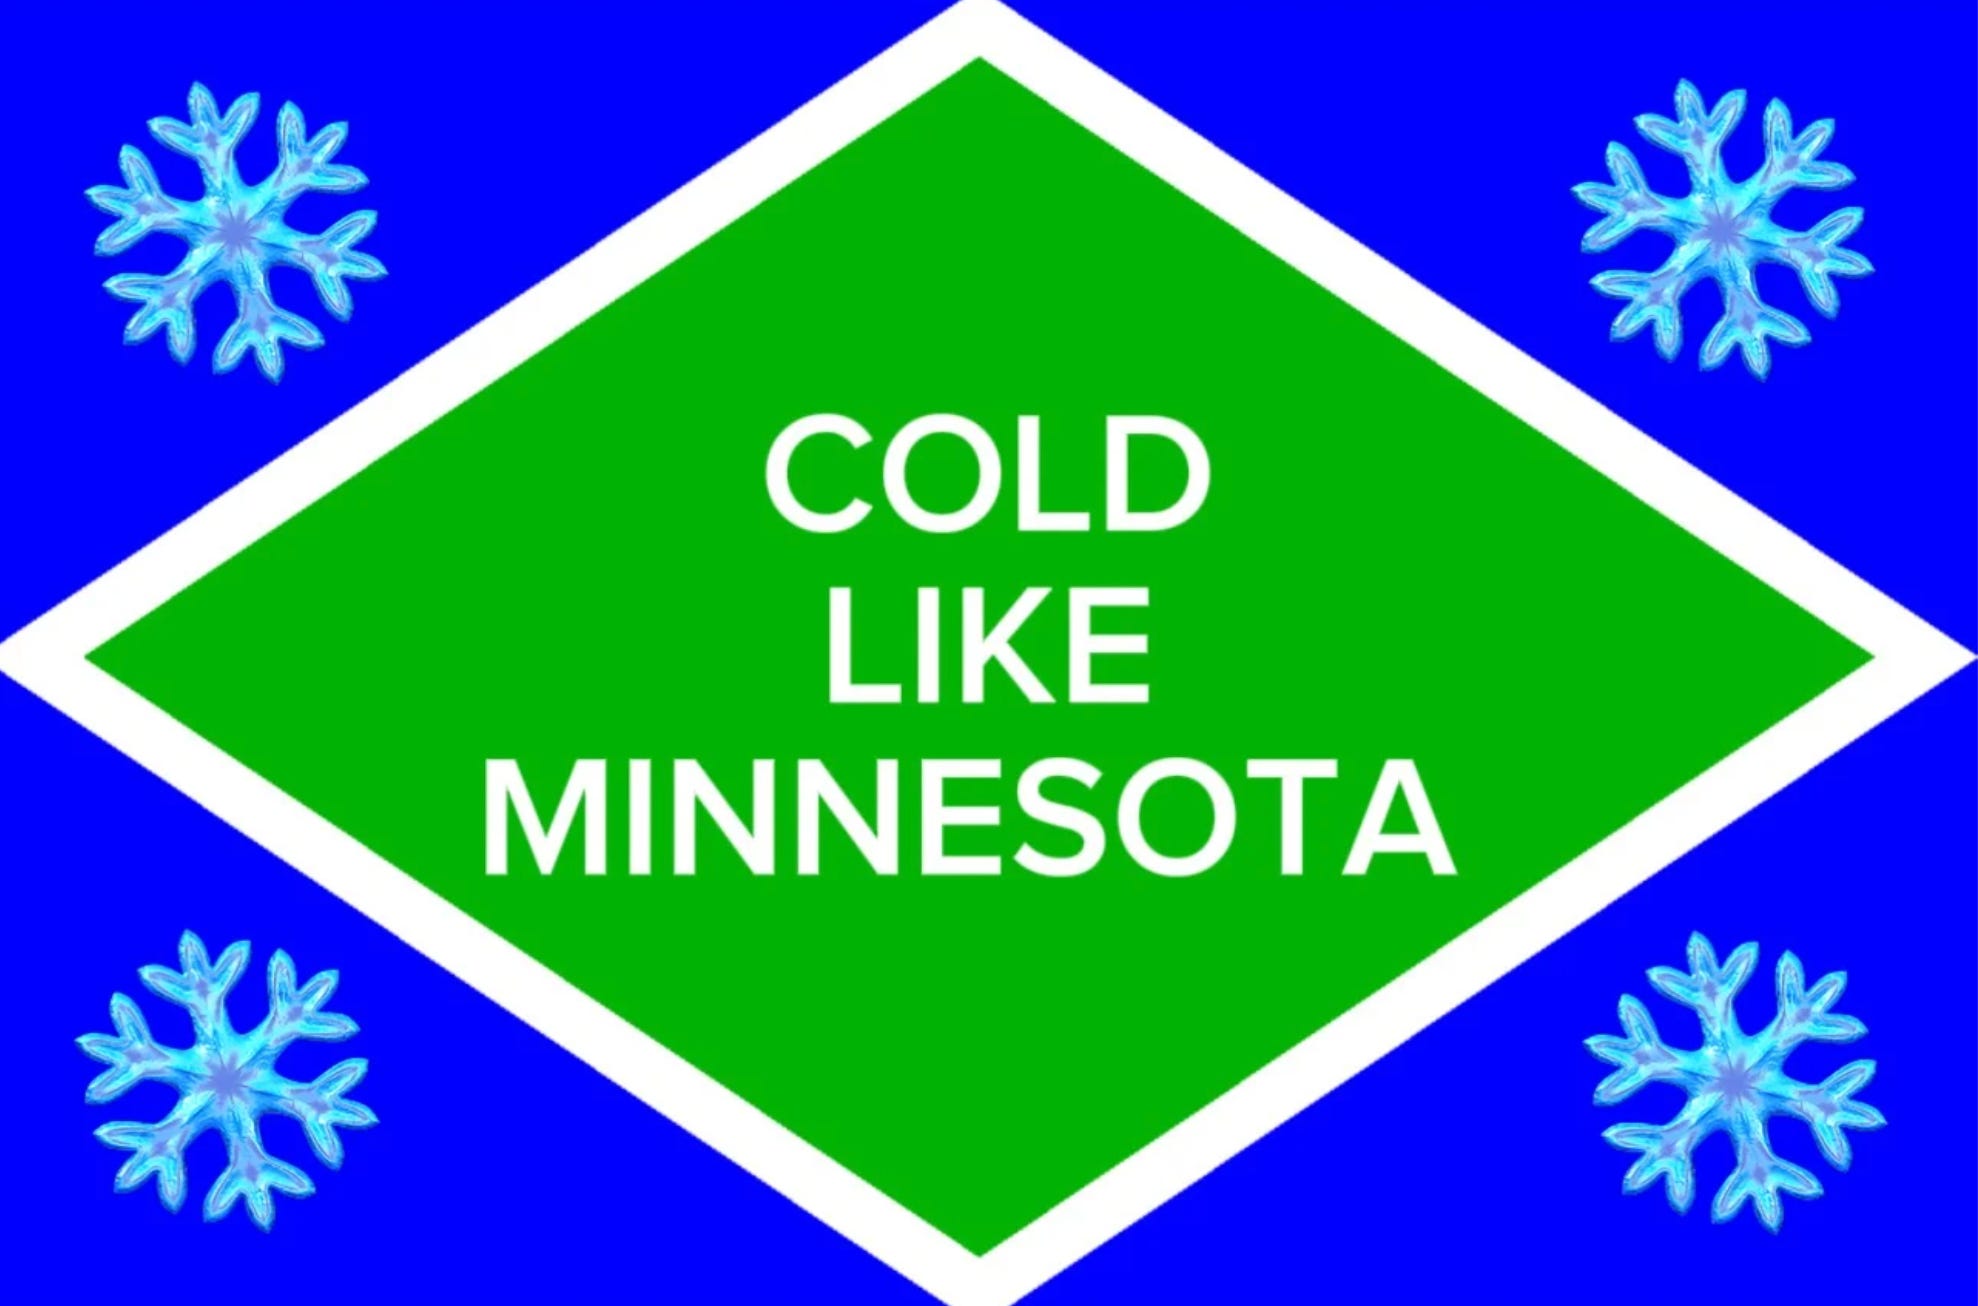 Diese Flagge zeigt vier Schneeflocken, die ein Emblem mit der Aufschrift „COLD LIKE MINNESOTA“ umgeben.